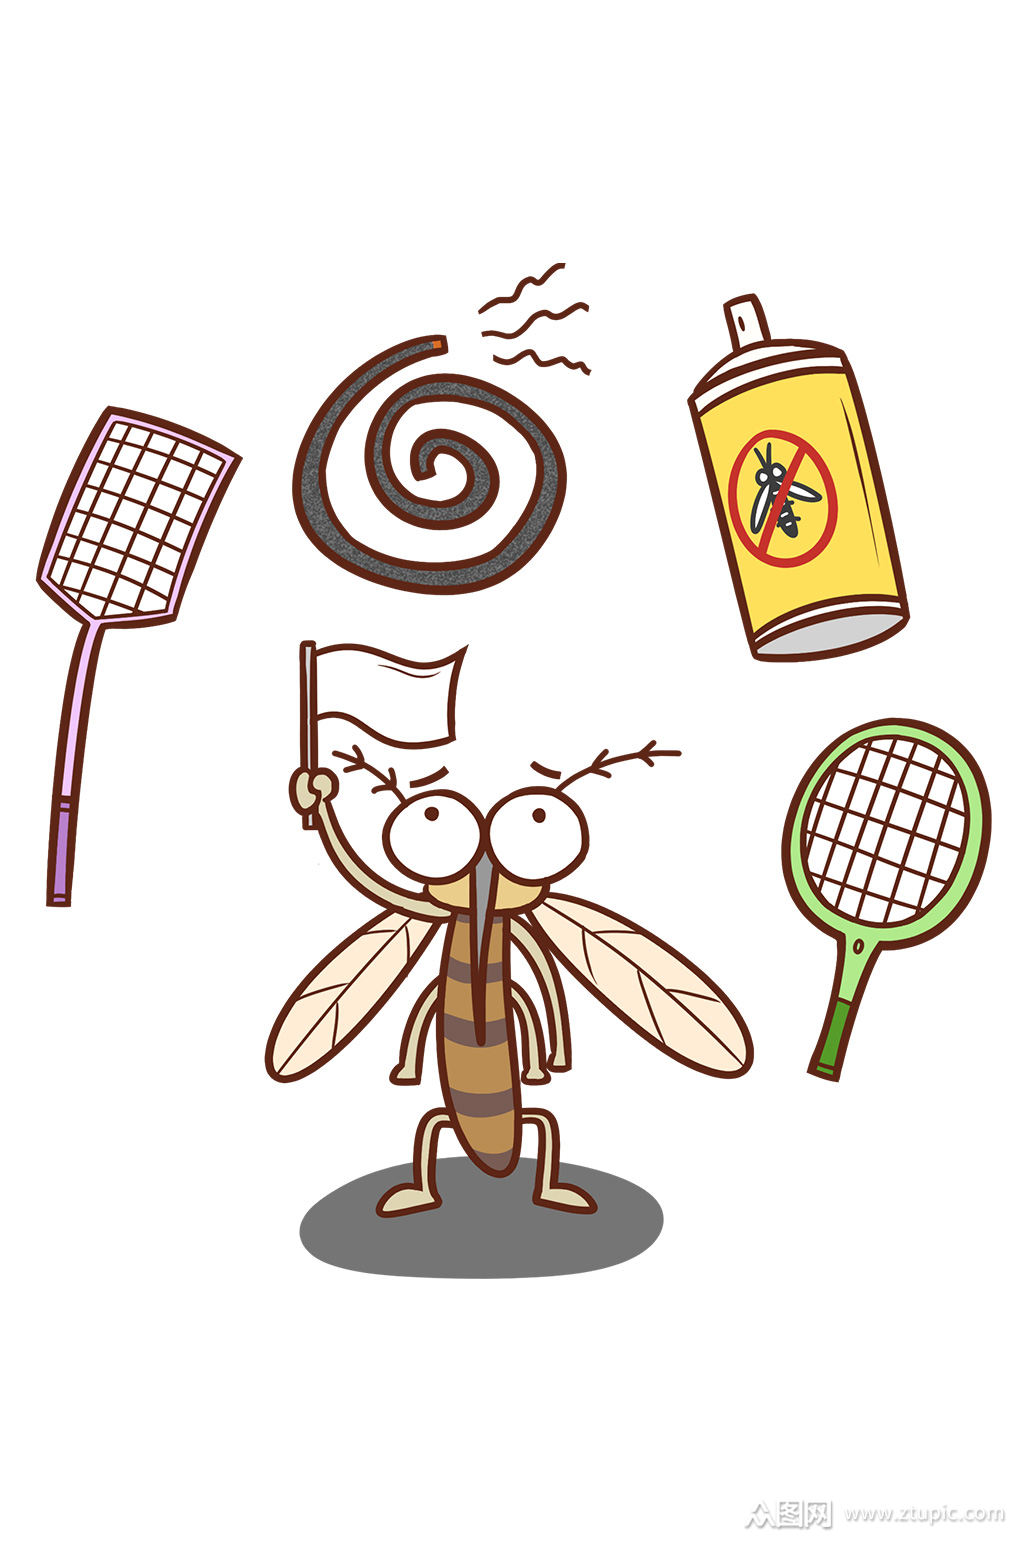 卡通手绘蚊子叮咬防蚊驱蚊健康宣传素材